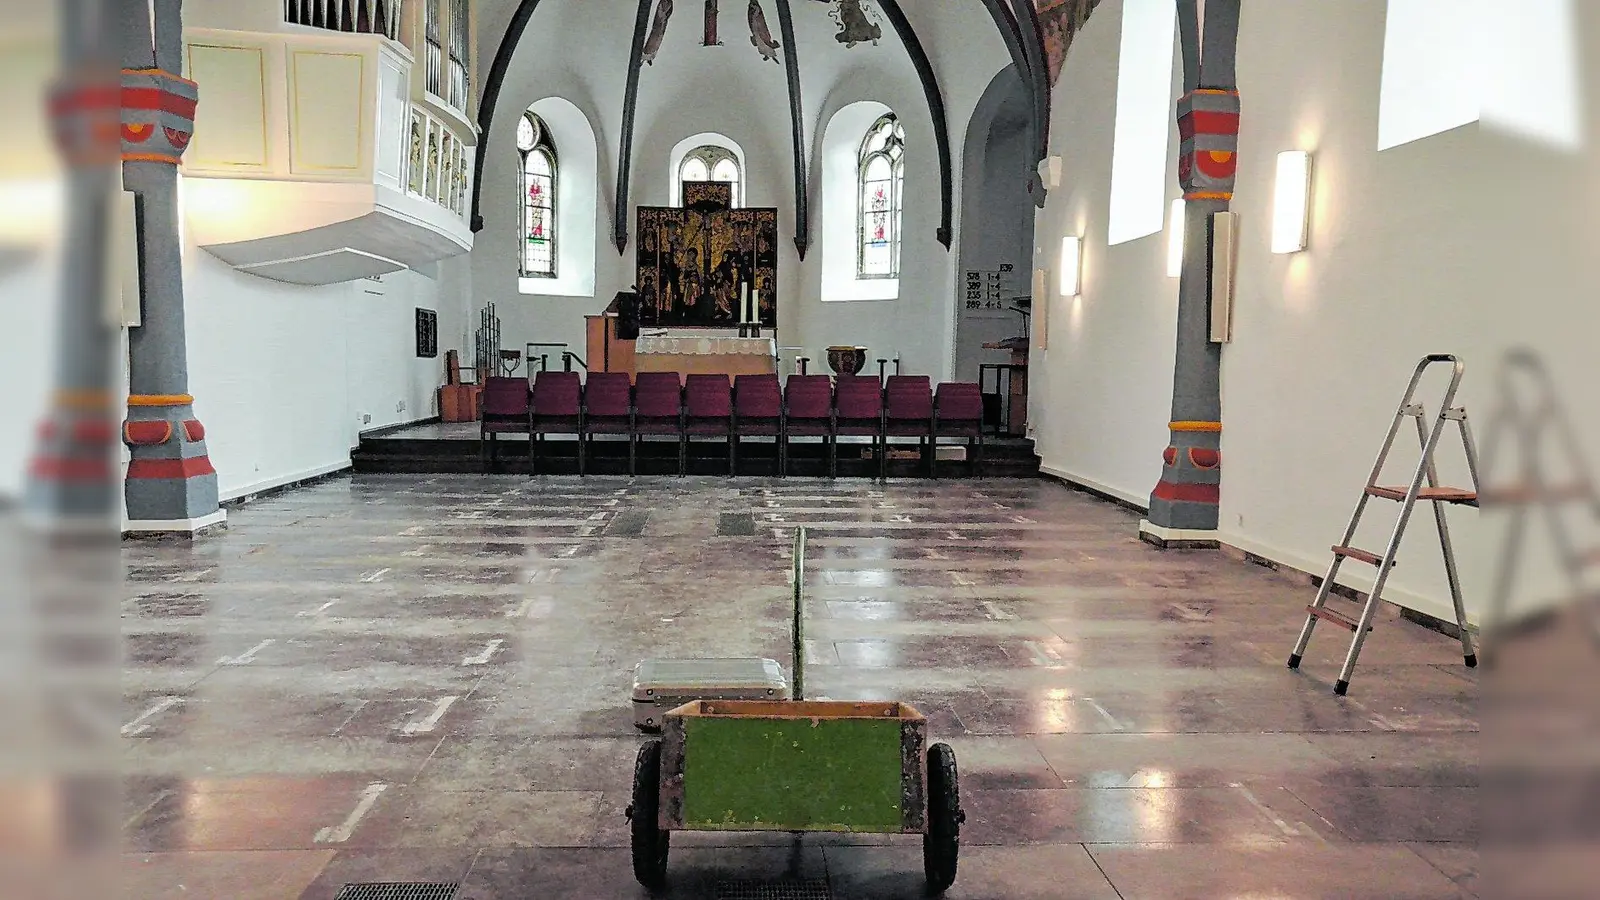 Einladung zur feierlichen Wiedereröffnung nach aufwendiger Sanierung der Kirche (Foto: bt)